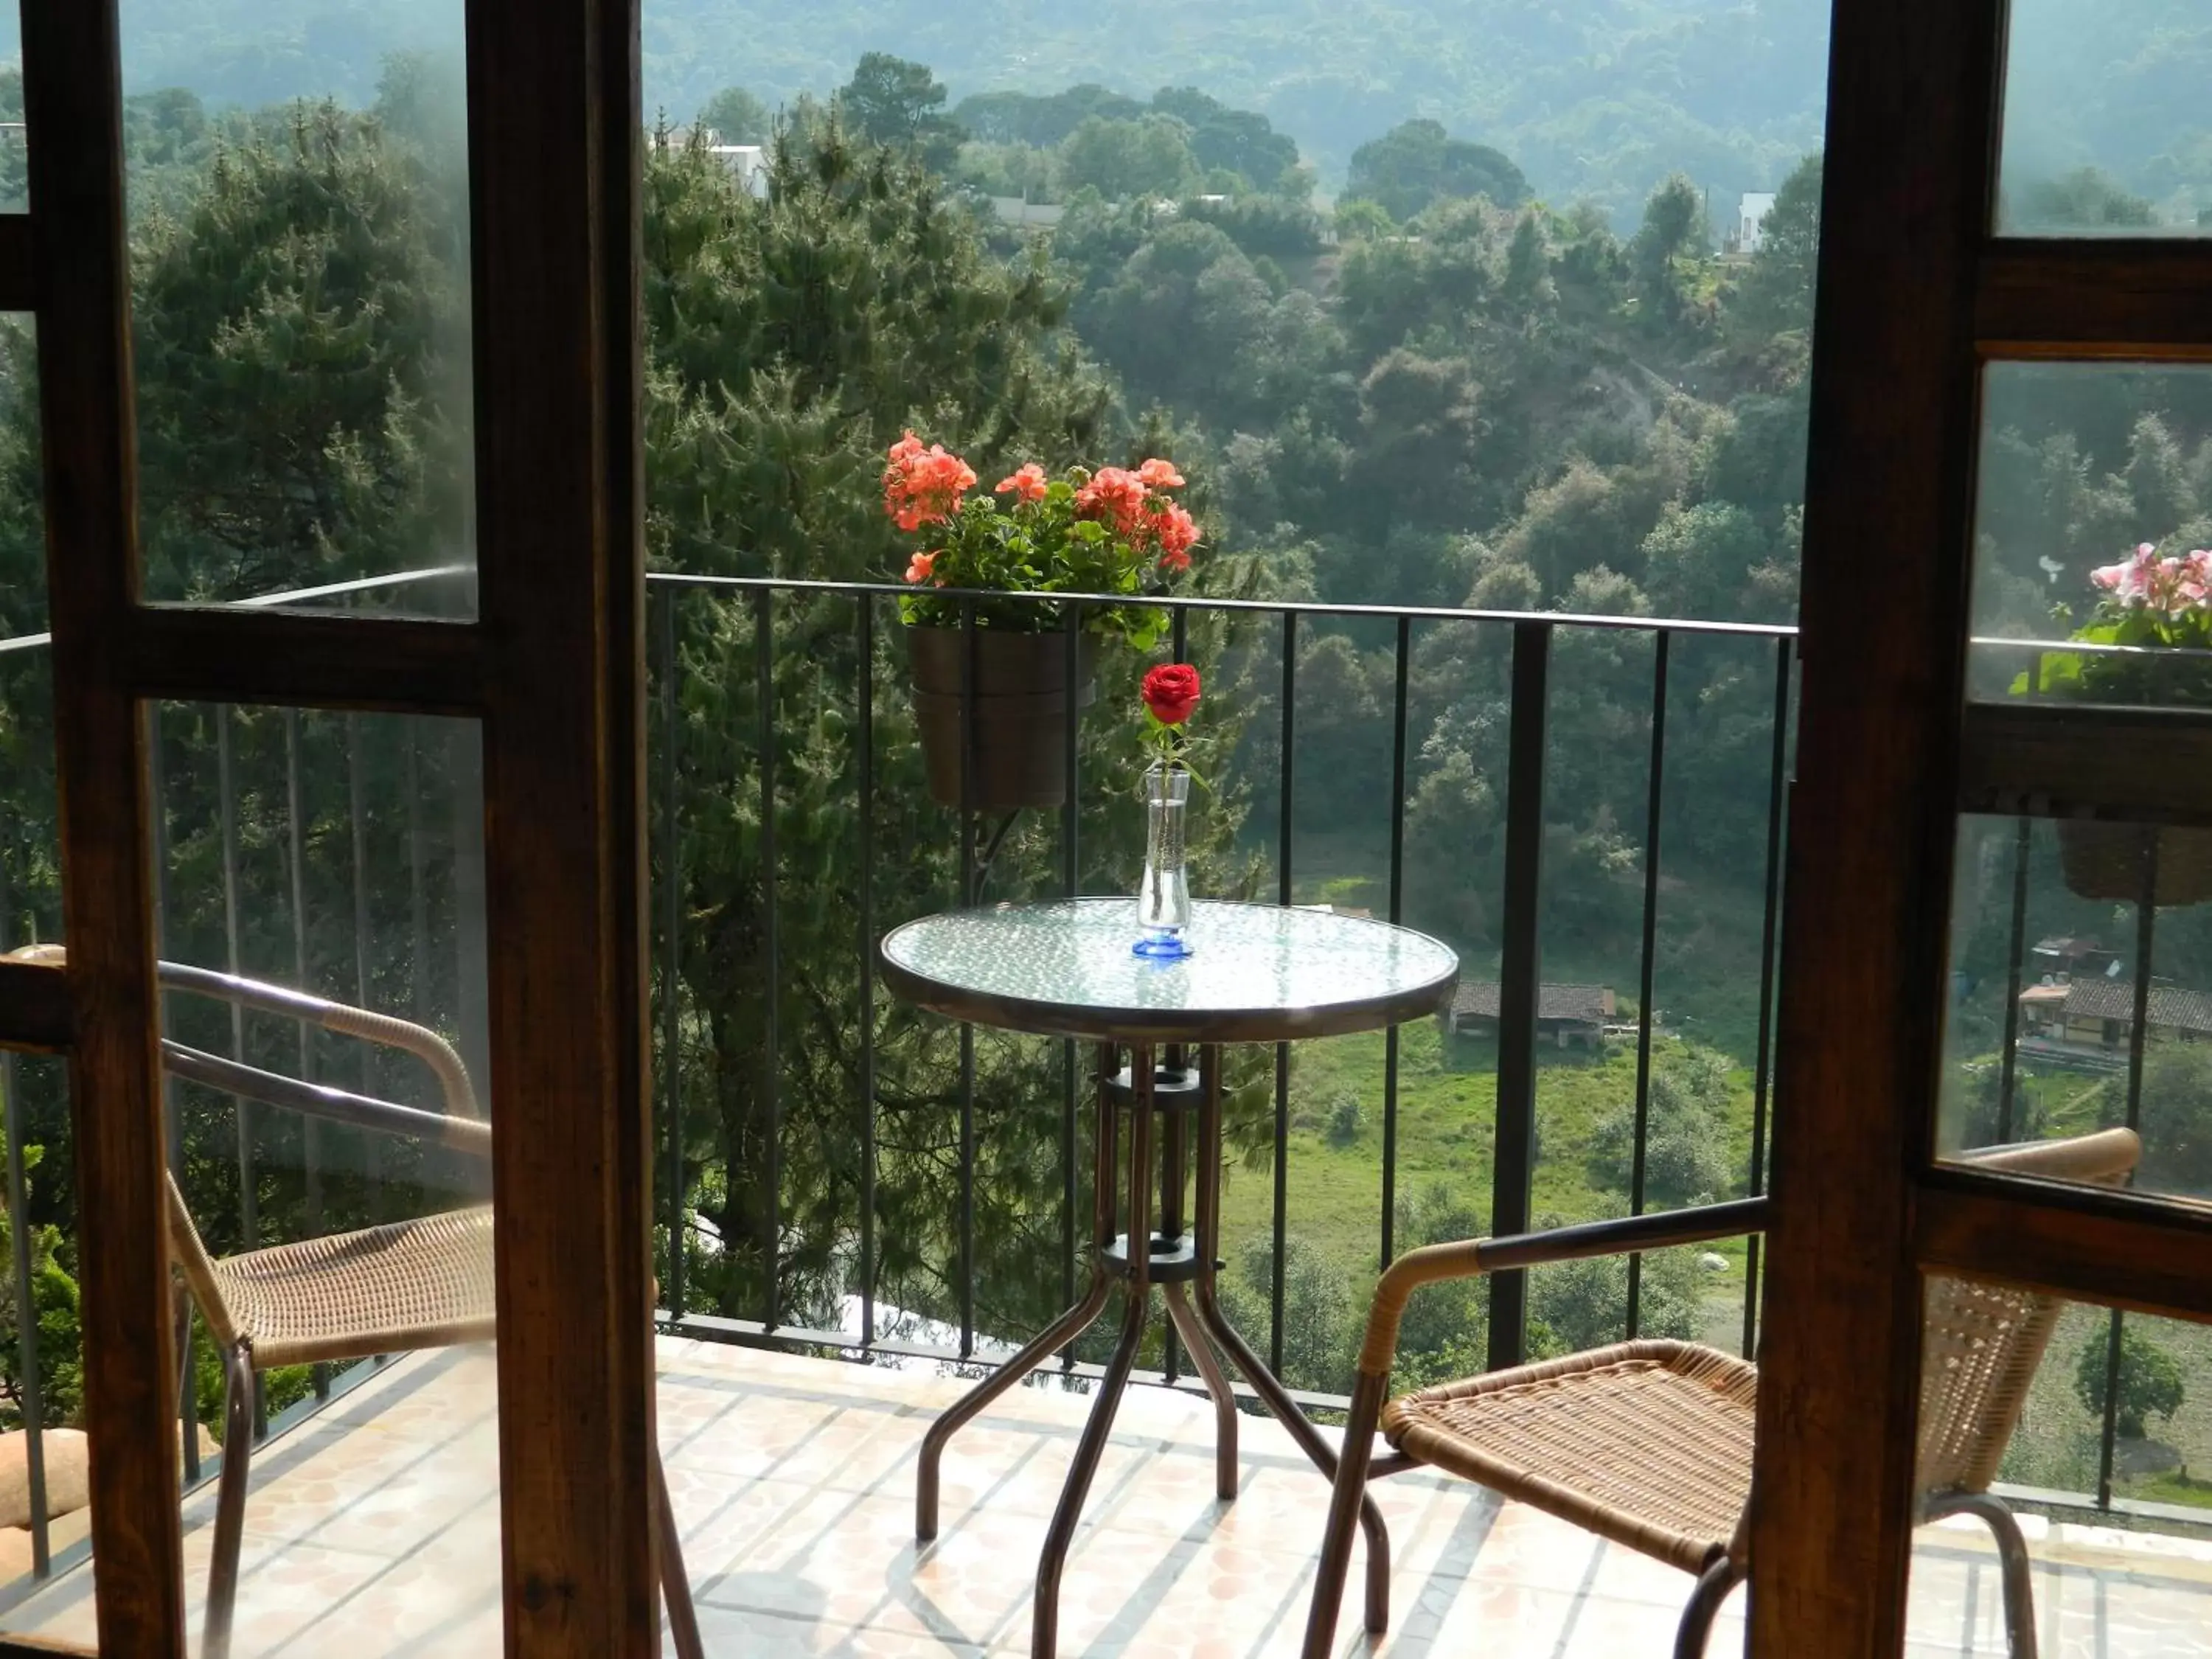 Balcony/Terrace in Hotel San Jorge